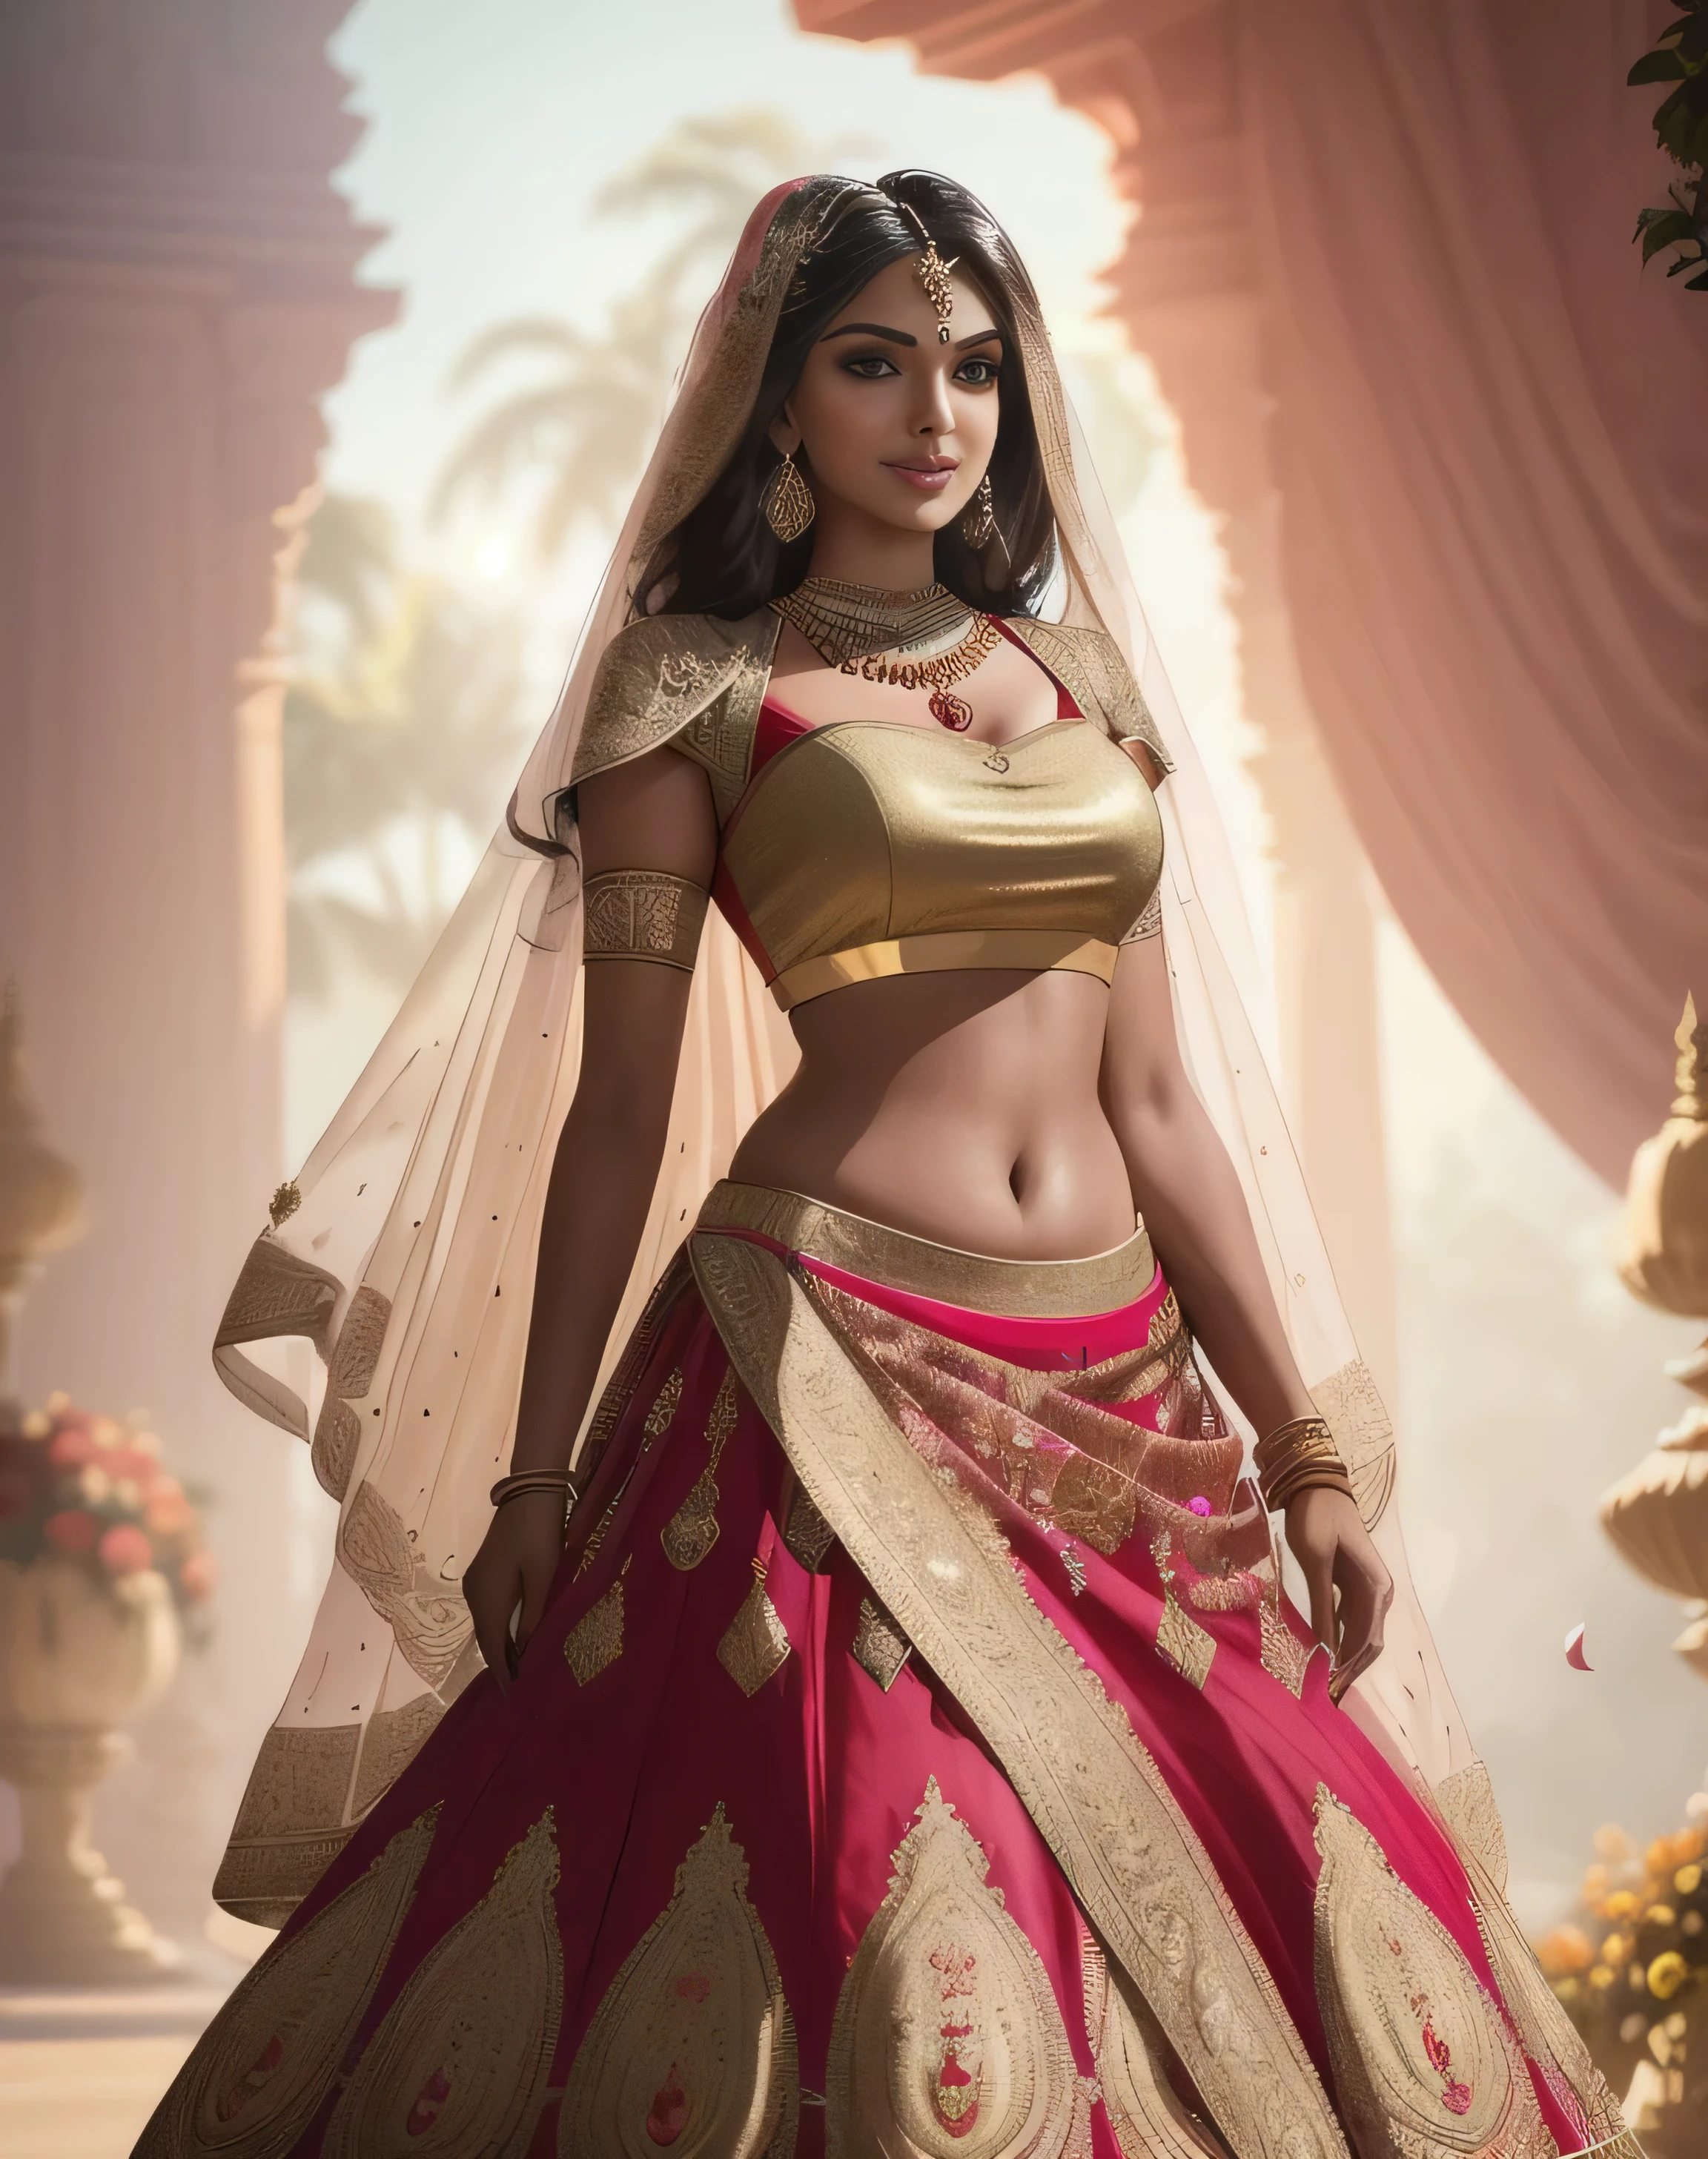 (Шедевральная сольная фотография в полный рост:1.2) соблазнительная сексуальная высокая фигуристая (18 лет) Индийская супермодель, принцесса-невеста Амала Пол, входит (Королевский сад:1.3), (в потрясающем свадебном красном цвете & золотая лехенга & блузка:1.3). чистая дупатта, максимализм, (свадебные цветочные украшения:1.3), (индийский макияж & Ювелирные изделия:1.2) длинные заплетенные каштановые волосы с мелированием,, жизнерадостный, похотливый взгляд, воодушевленный (красивые детализированные глаза:1.1) , (кокетливая яркая улыбка:1.2), (интенсивный драматический дневной свет:1.4), с подсветкой, ключевой свет, ободной свет, лучи света, очень подробный, в тренде на artstation, брызги краски, насыщенный цвет, абстрактный портрет, от Атей Гайлан